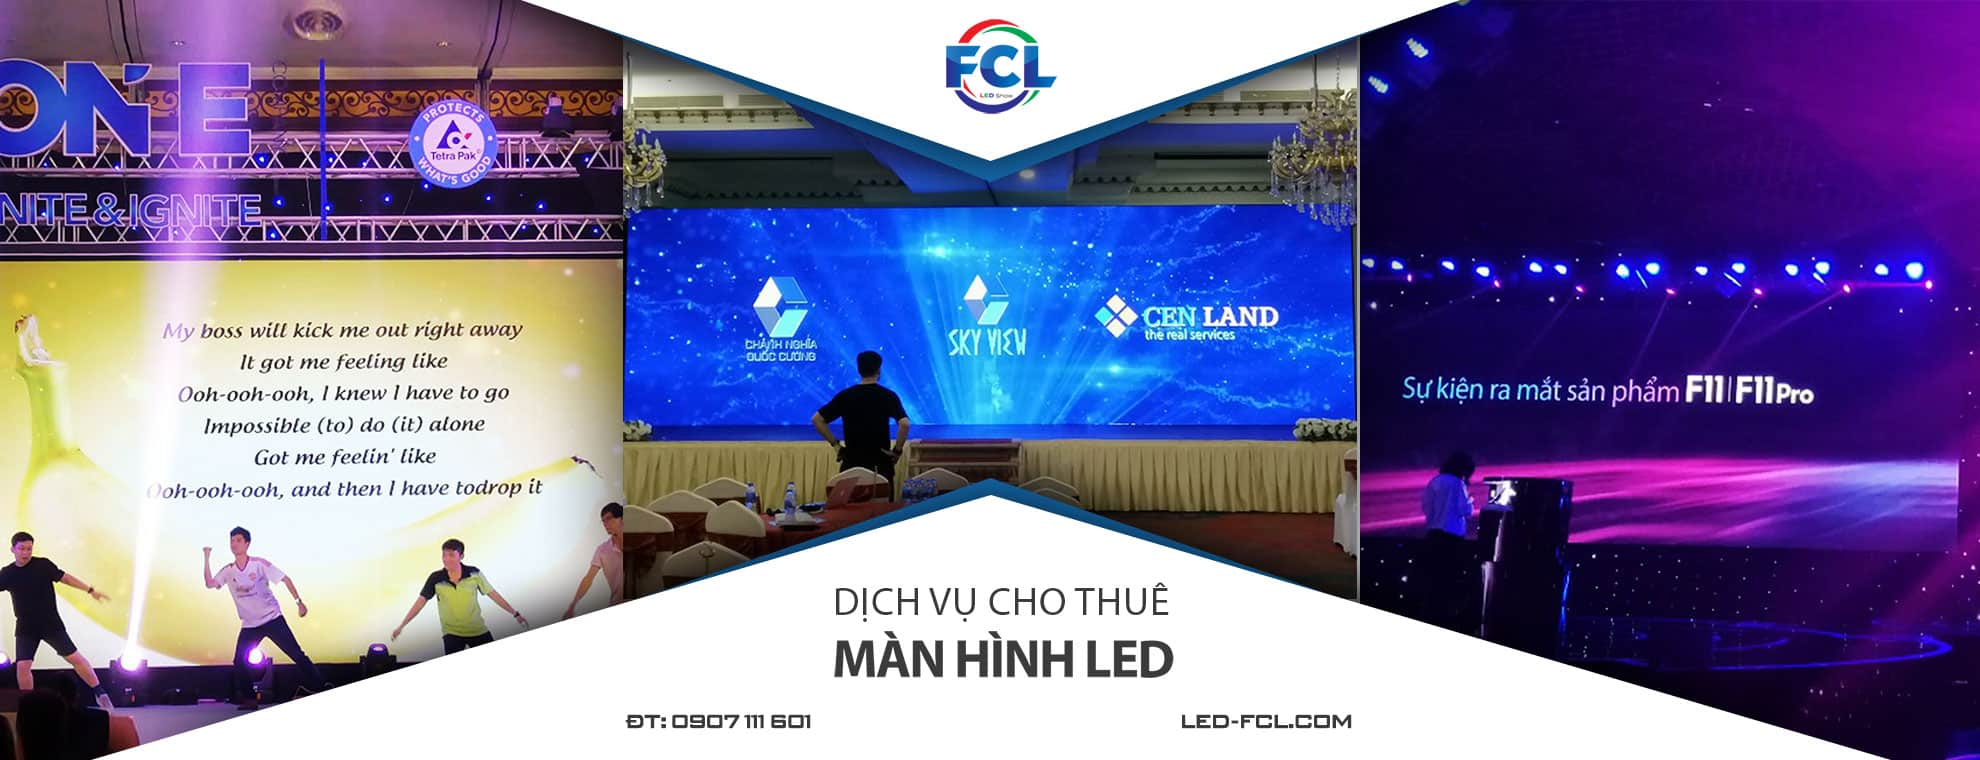 dich-vu-cho-thue-man-hinh-led-FCL-tp-hcm0907111601